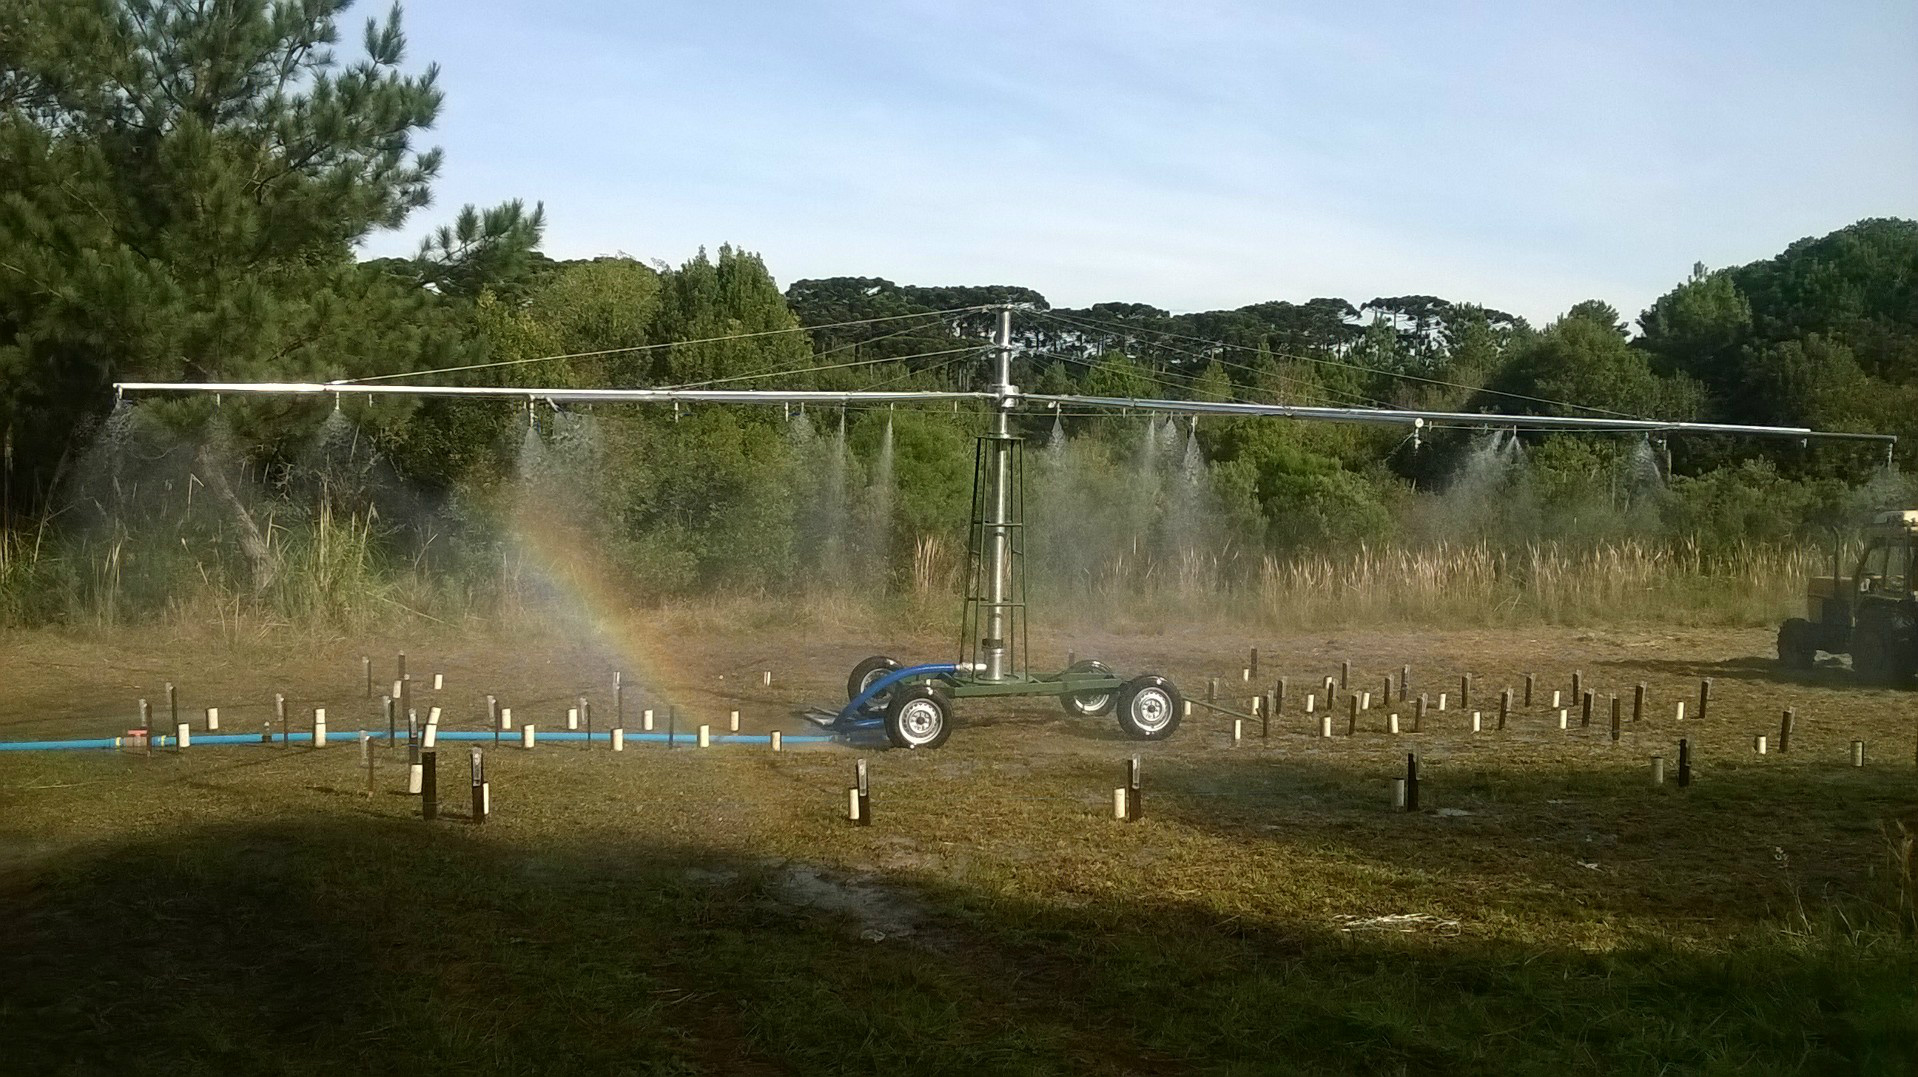 Simulador de chuvas foi utilizado para obtenção dos resultados do efeito da chuva sobre os defensivos agrícolasFoto: Divulgação